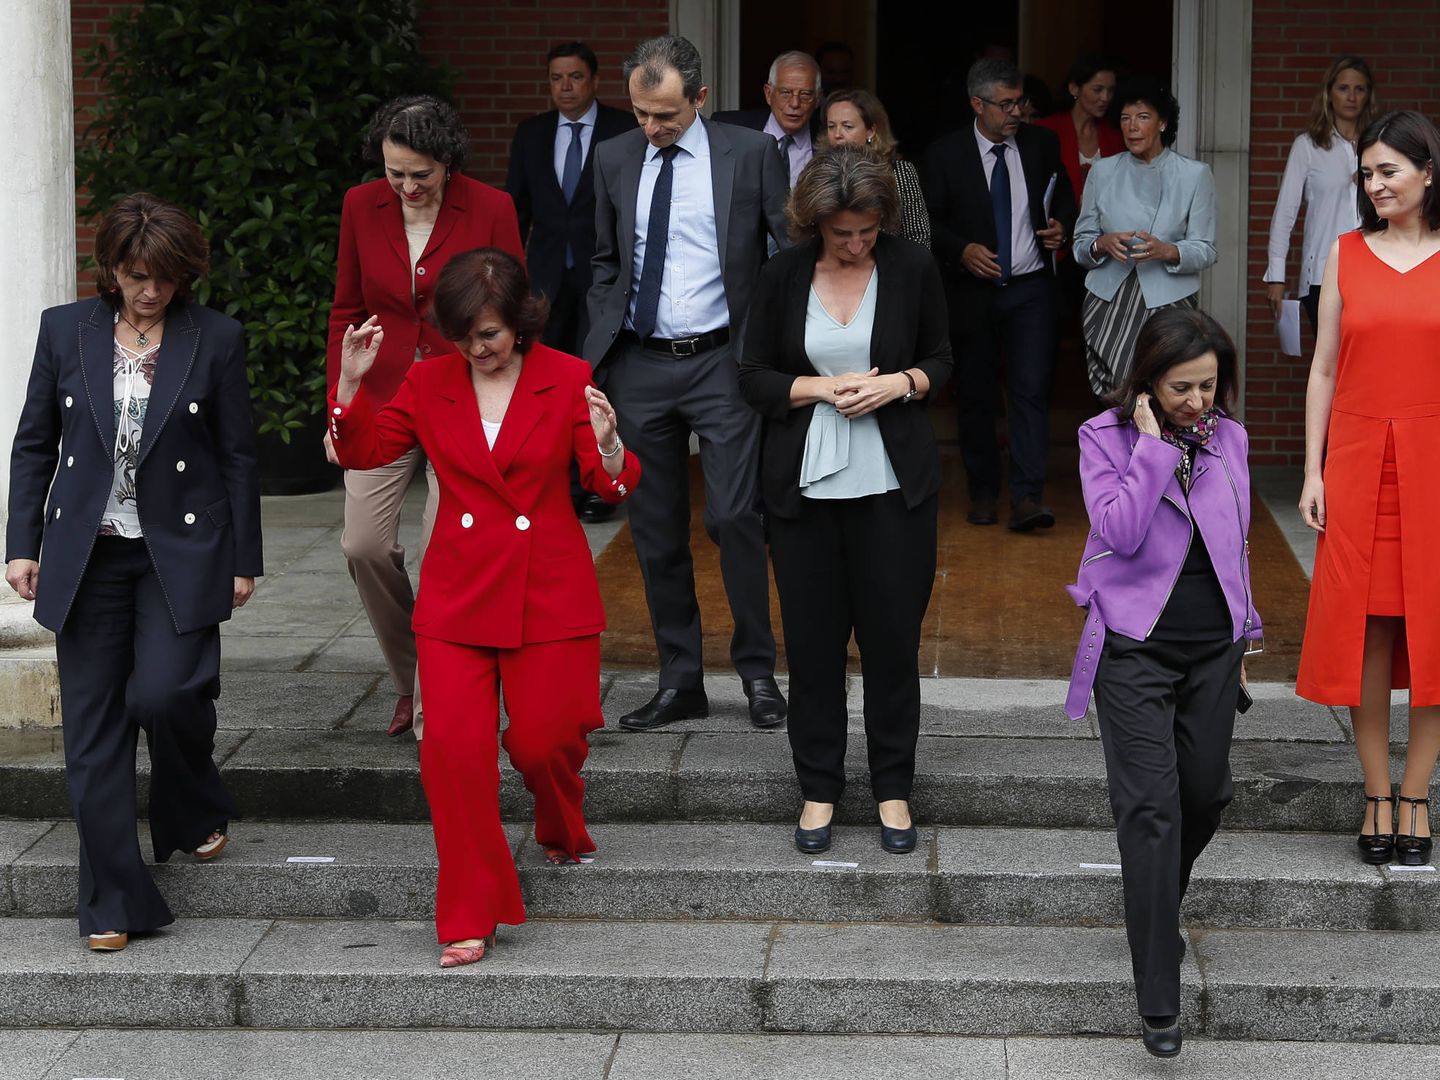 El equipo del PSOE minutos antes del posado oficial. (Gtresonline)